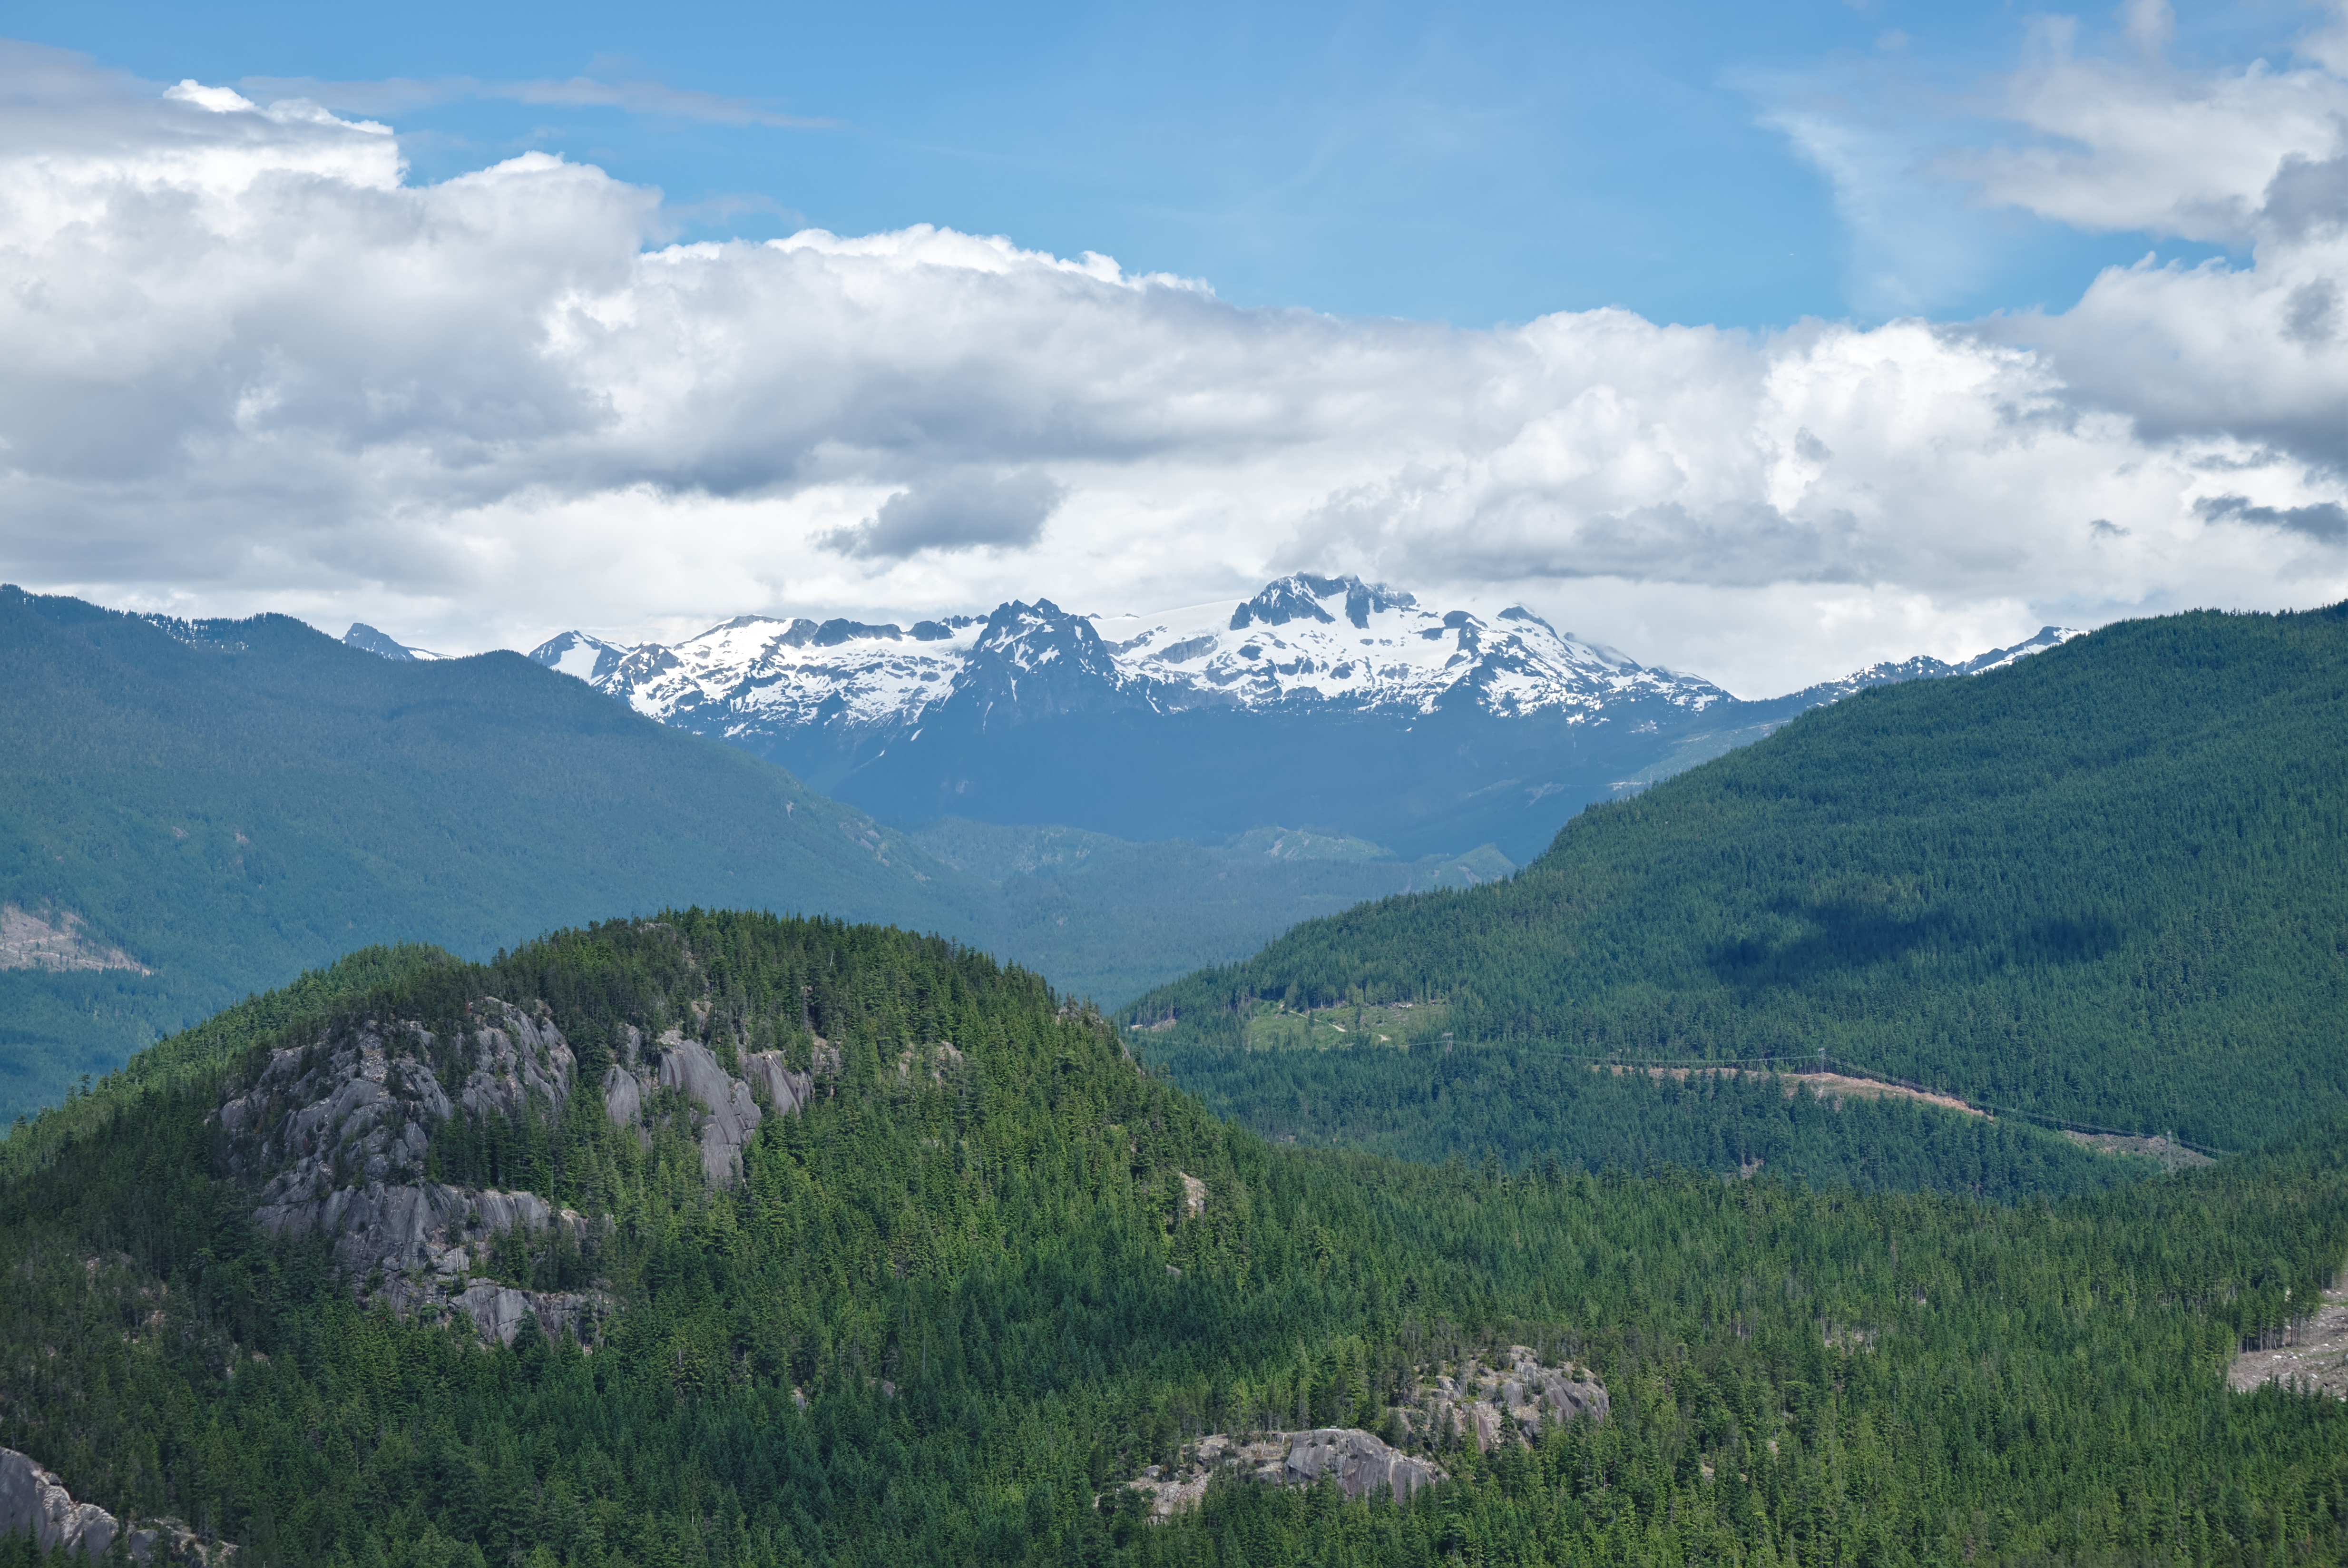 Stawamus Chief Provincial Park, BC (DSCF7828)